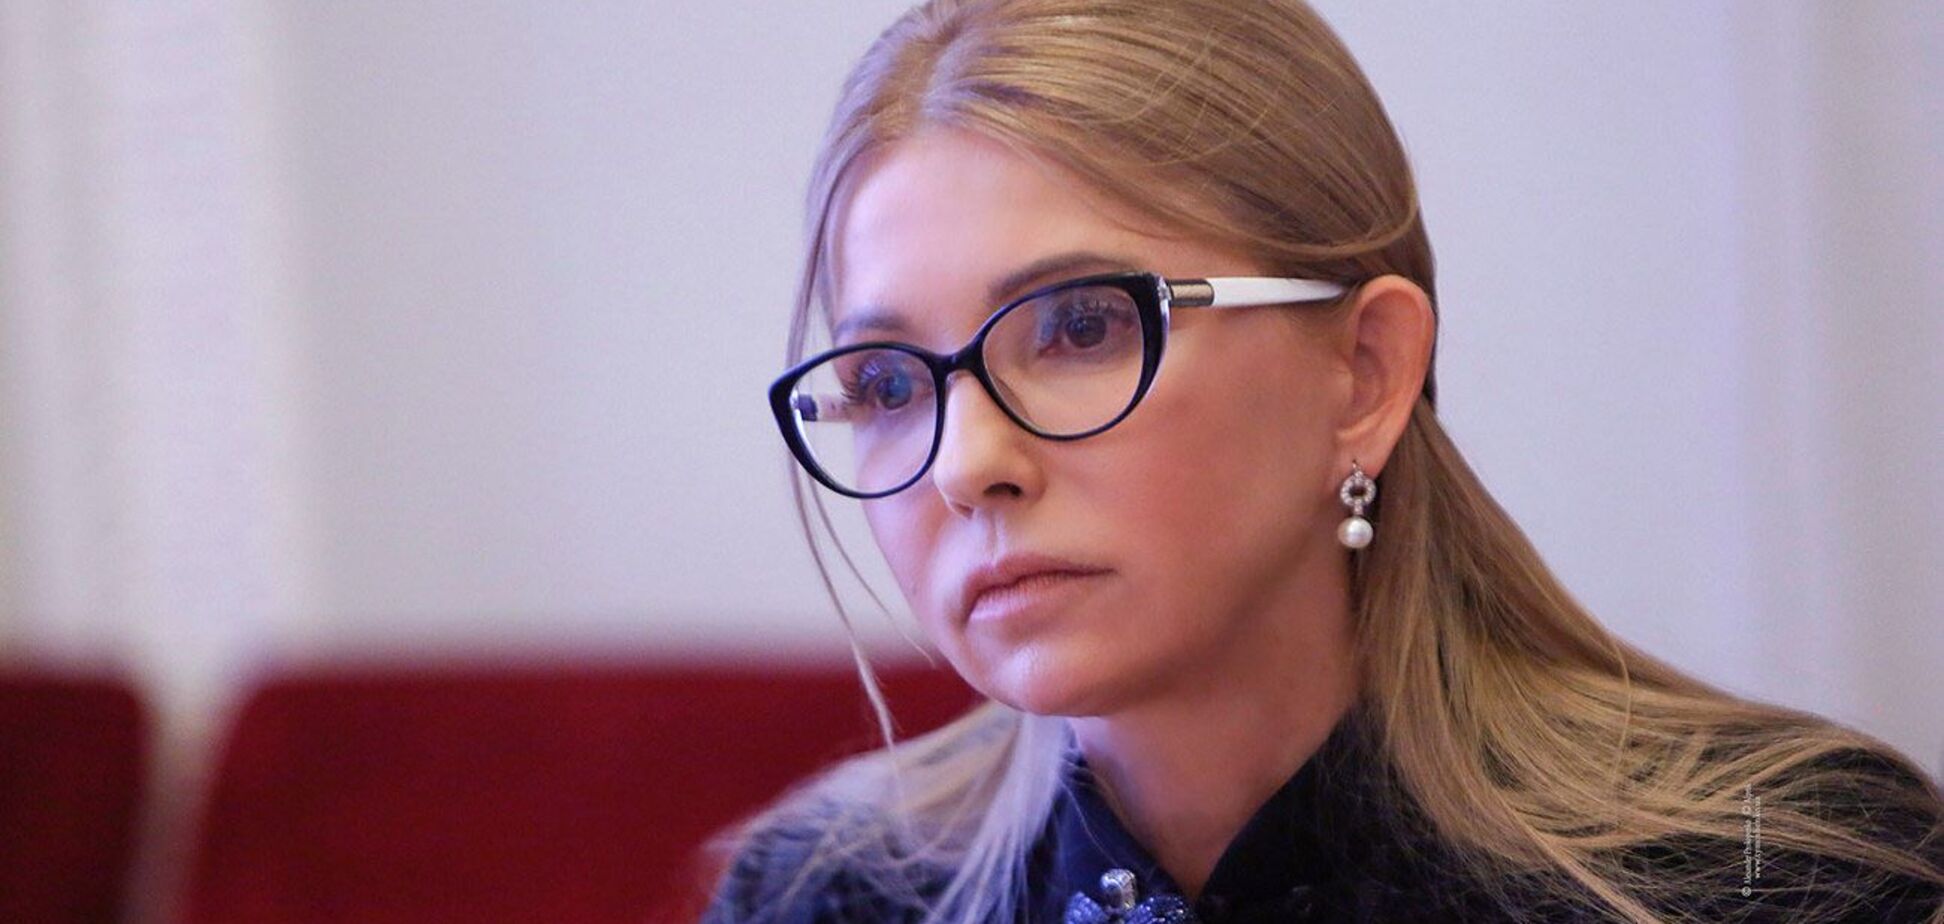 Тимошенко: 'Батьківщина' поможет организовать волеизъявление из ключевых для украинцев вопросов